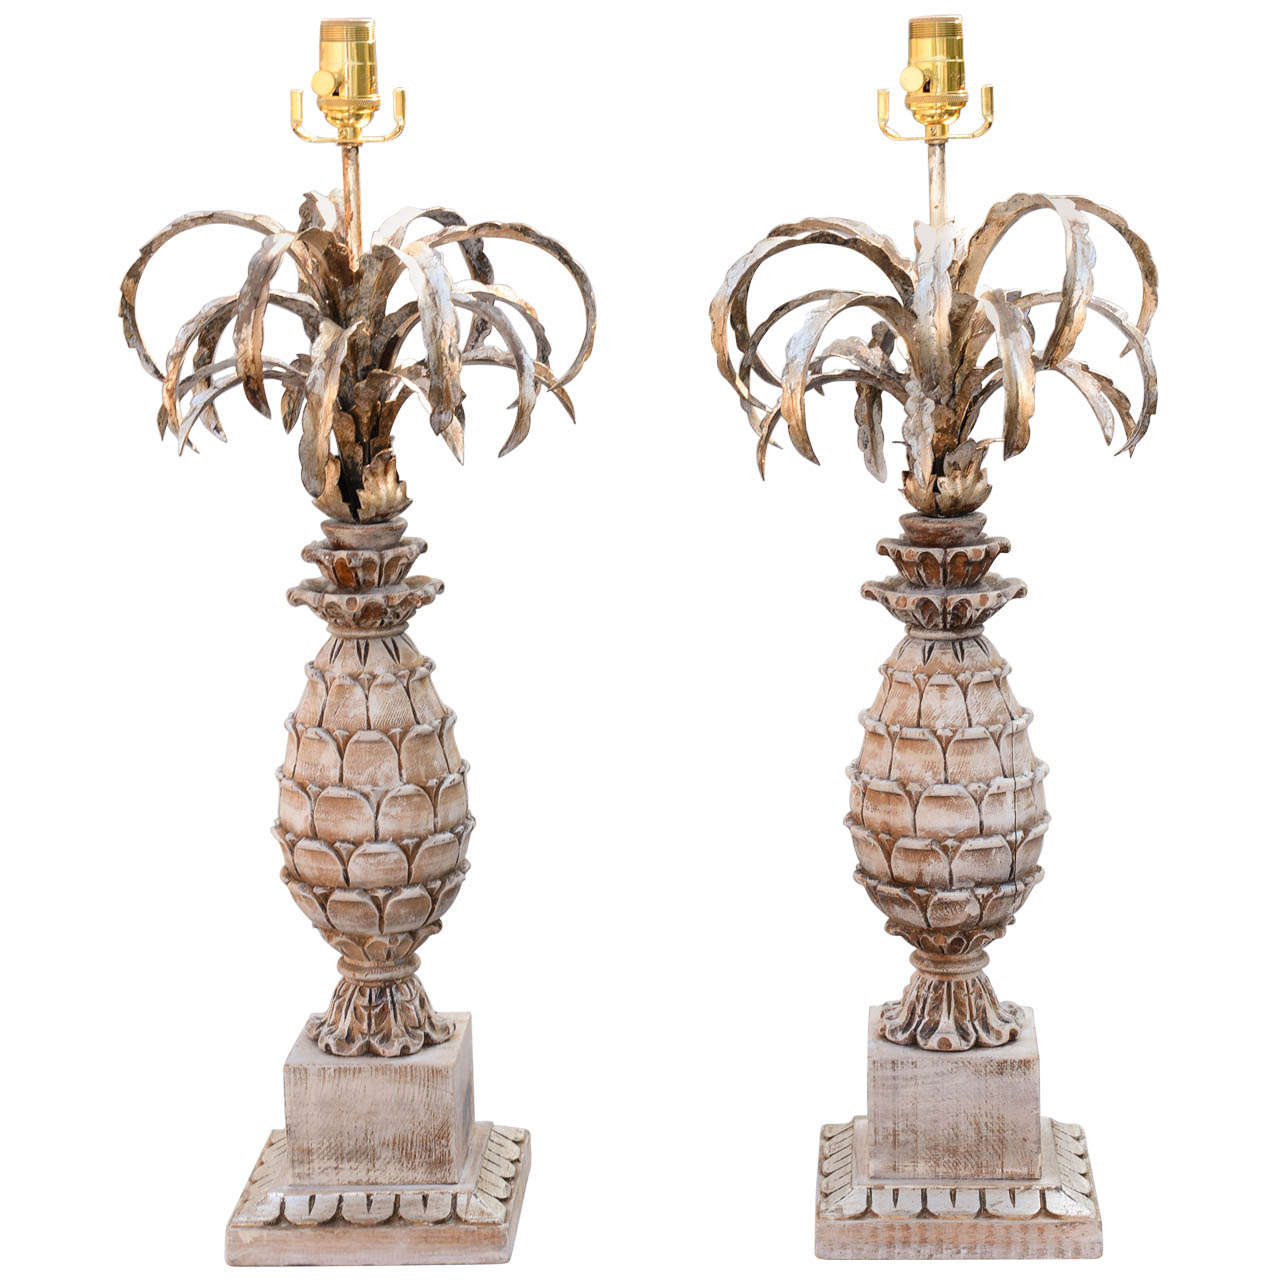 Lampen aus geschnitztem Holz und Metall in Ananasform, Paar